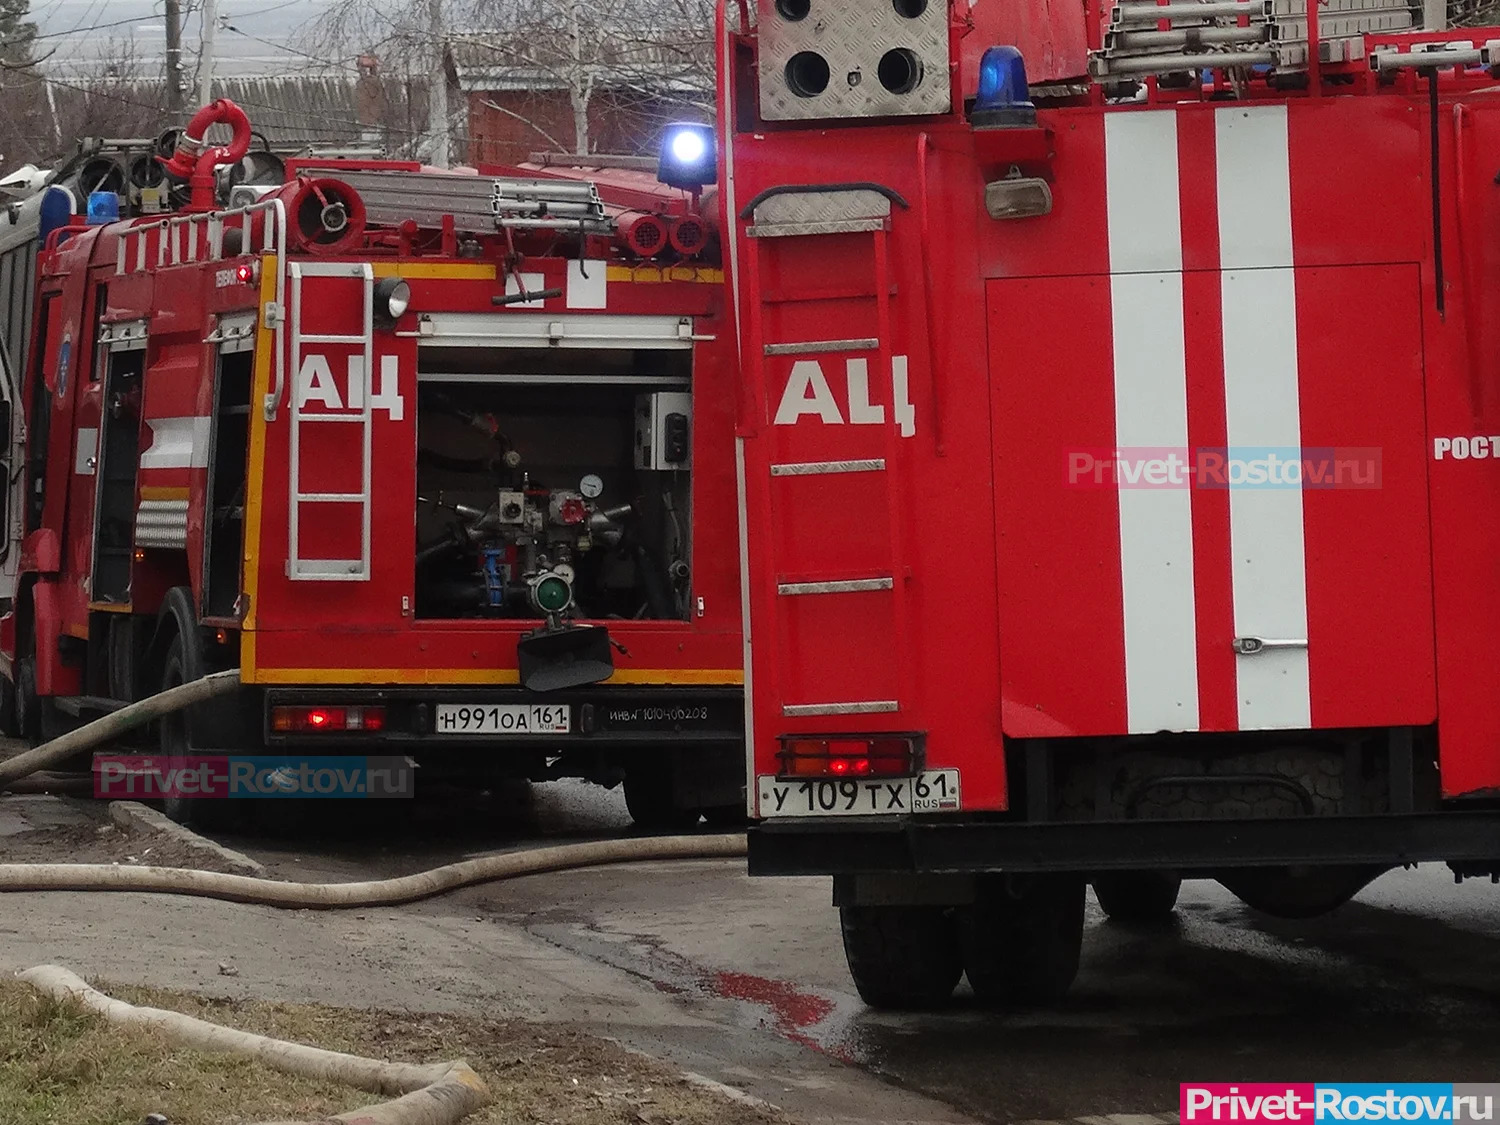 В Ростове вспыхнул крупный пожар в районе рынка Атлант